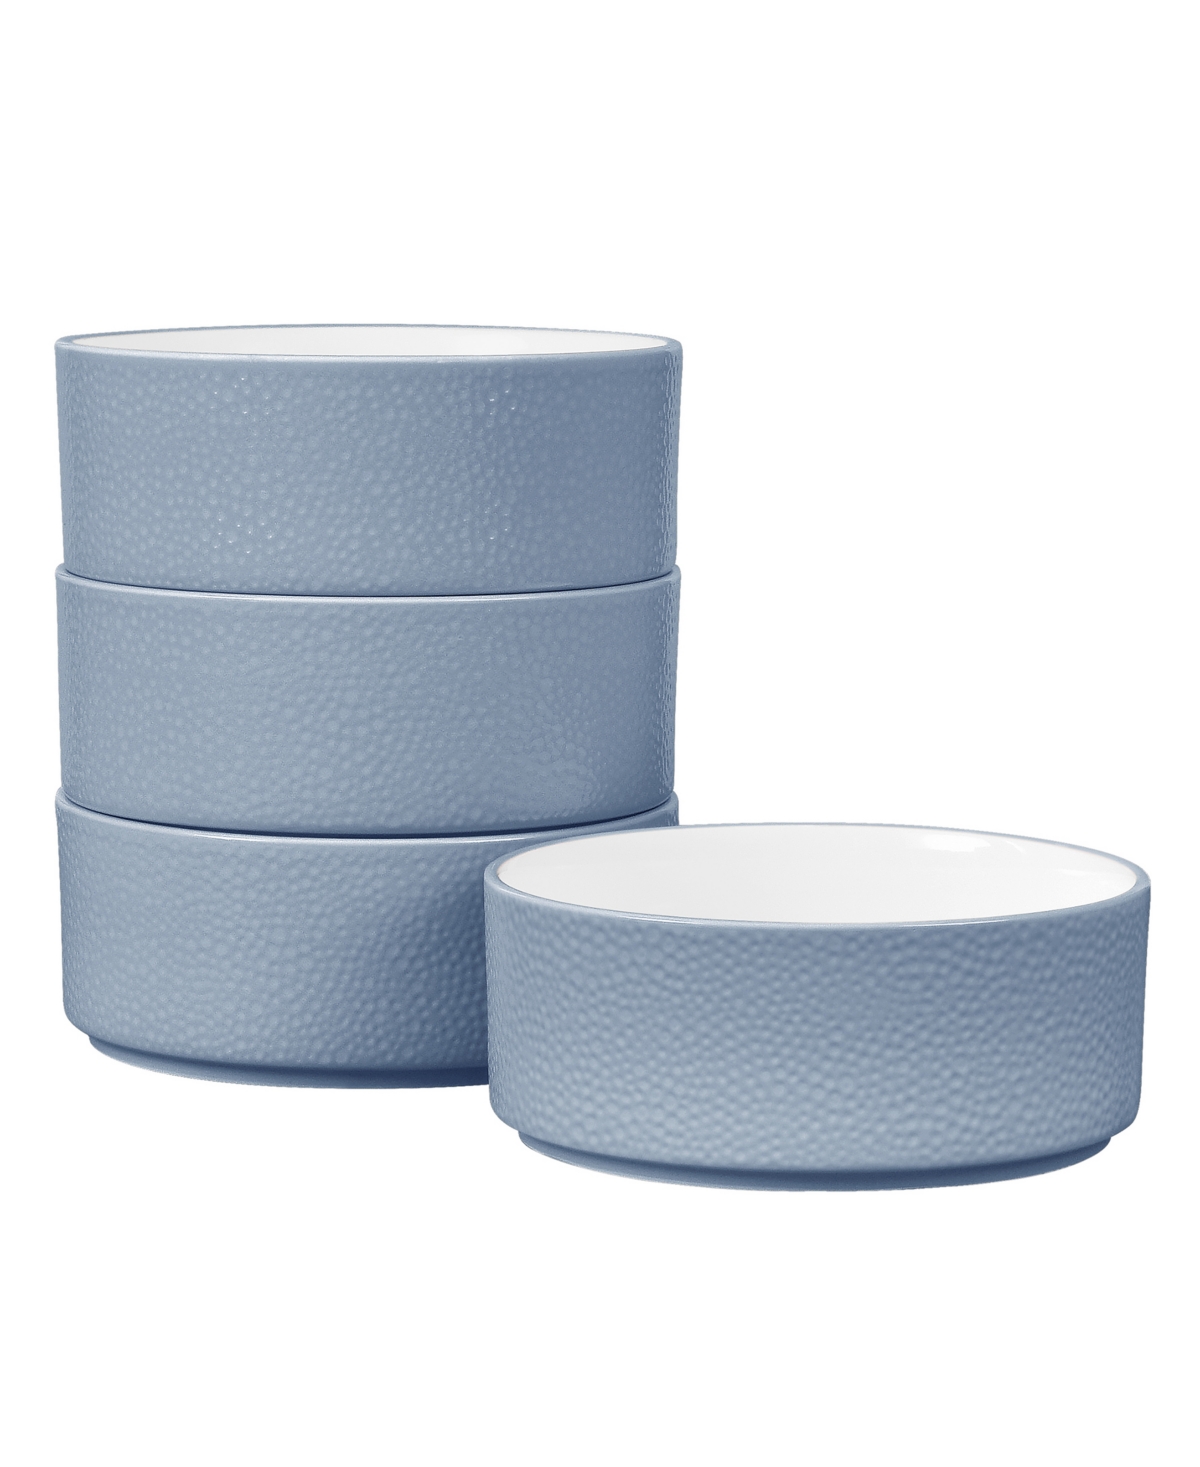 Colortex Stone Stax Cereal Bowls, Set of 4 - Aqua